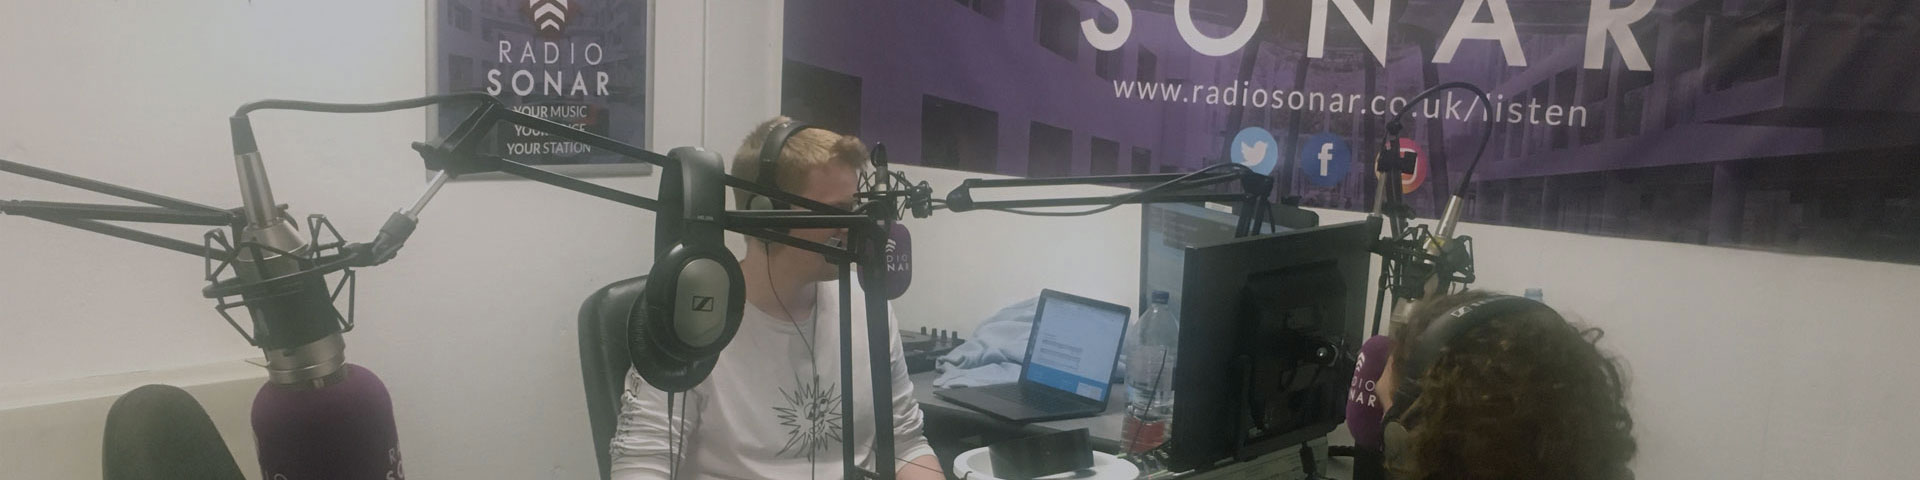 A Radio Sonar presenter in the studio